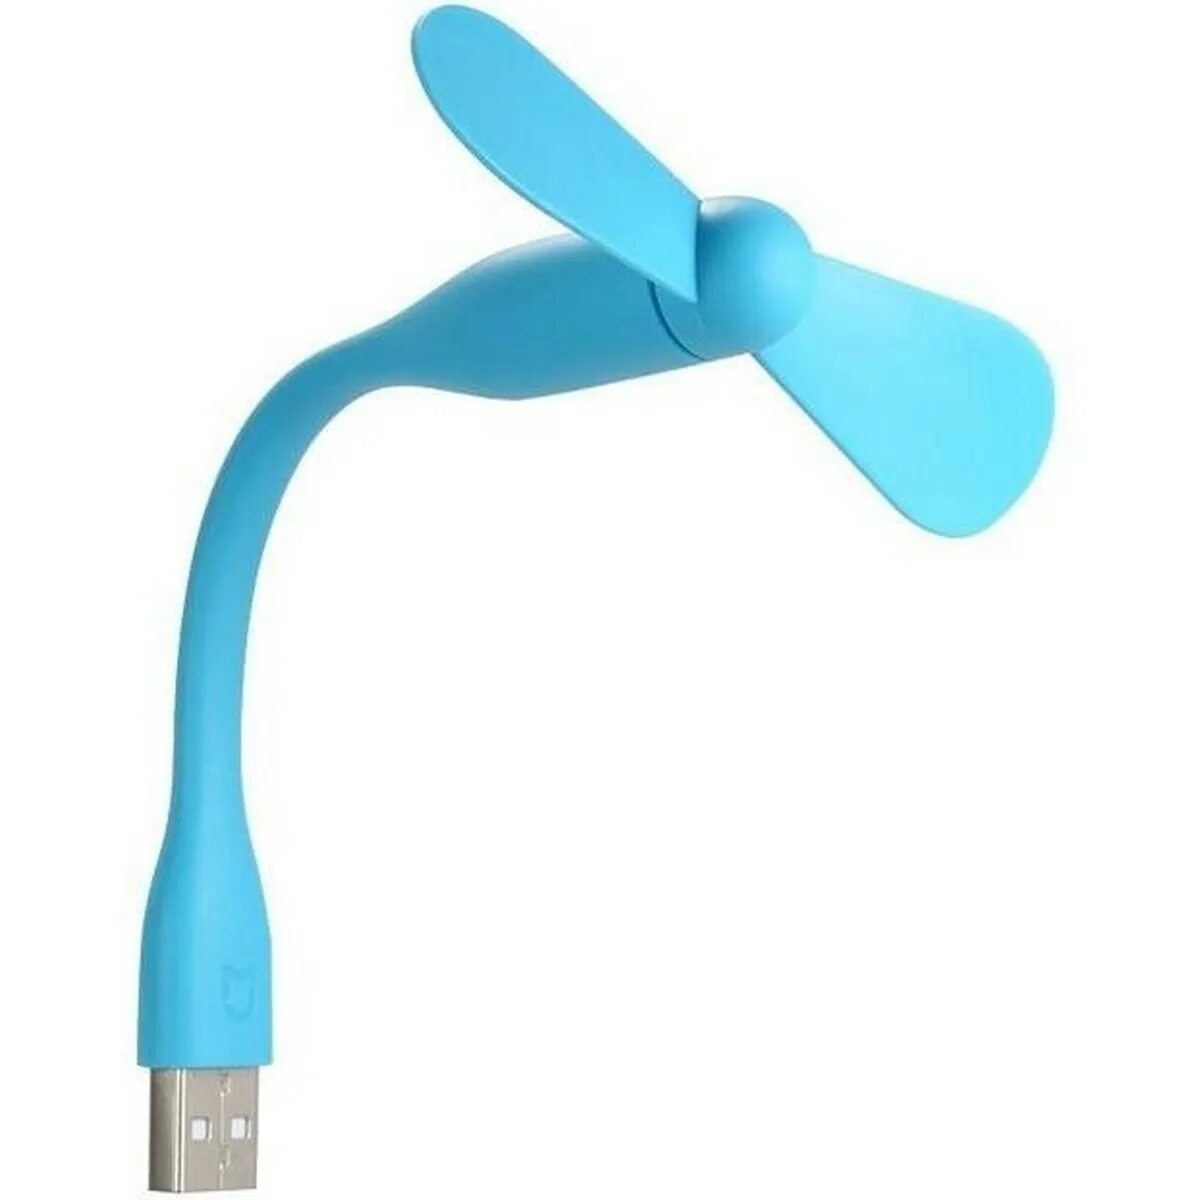 Fan usb. Xiaomi USB Fan Blue. Портативный вентилятор Xiaomi. Вентилятор USB Portable Fan. Вентилятор хиаоми ручной.